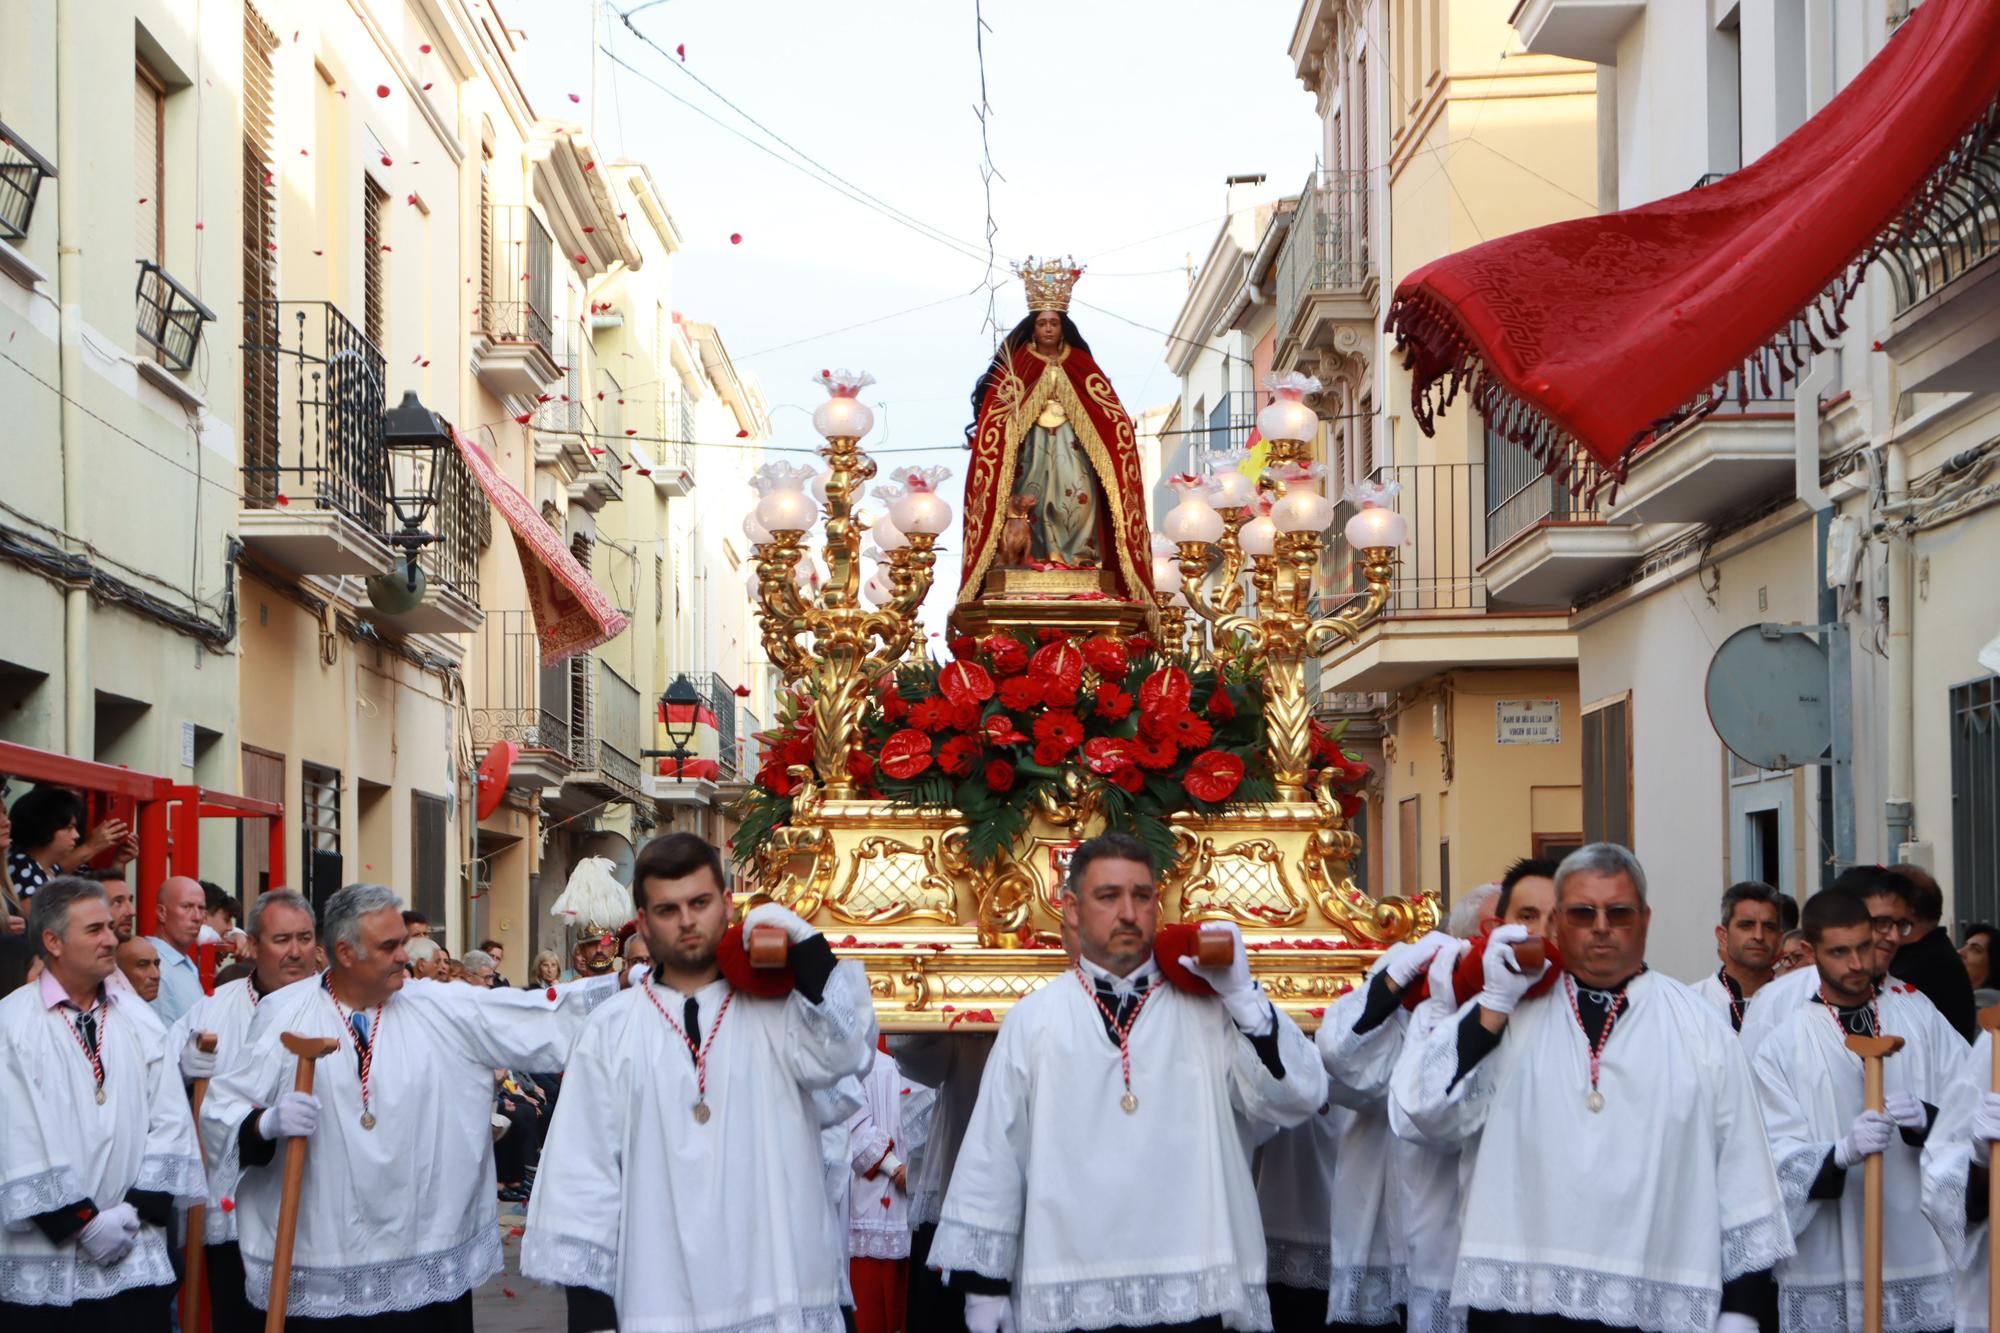 Fotos de la procesión de Santa Quitèria en las fiestas de Almassora